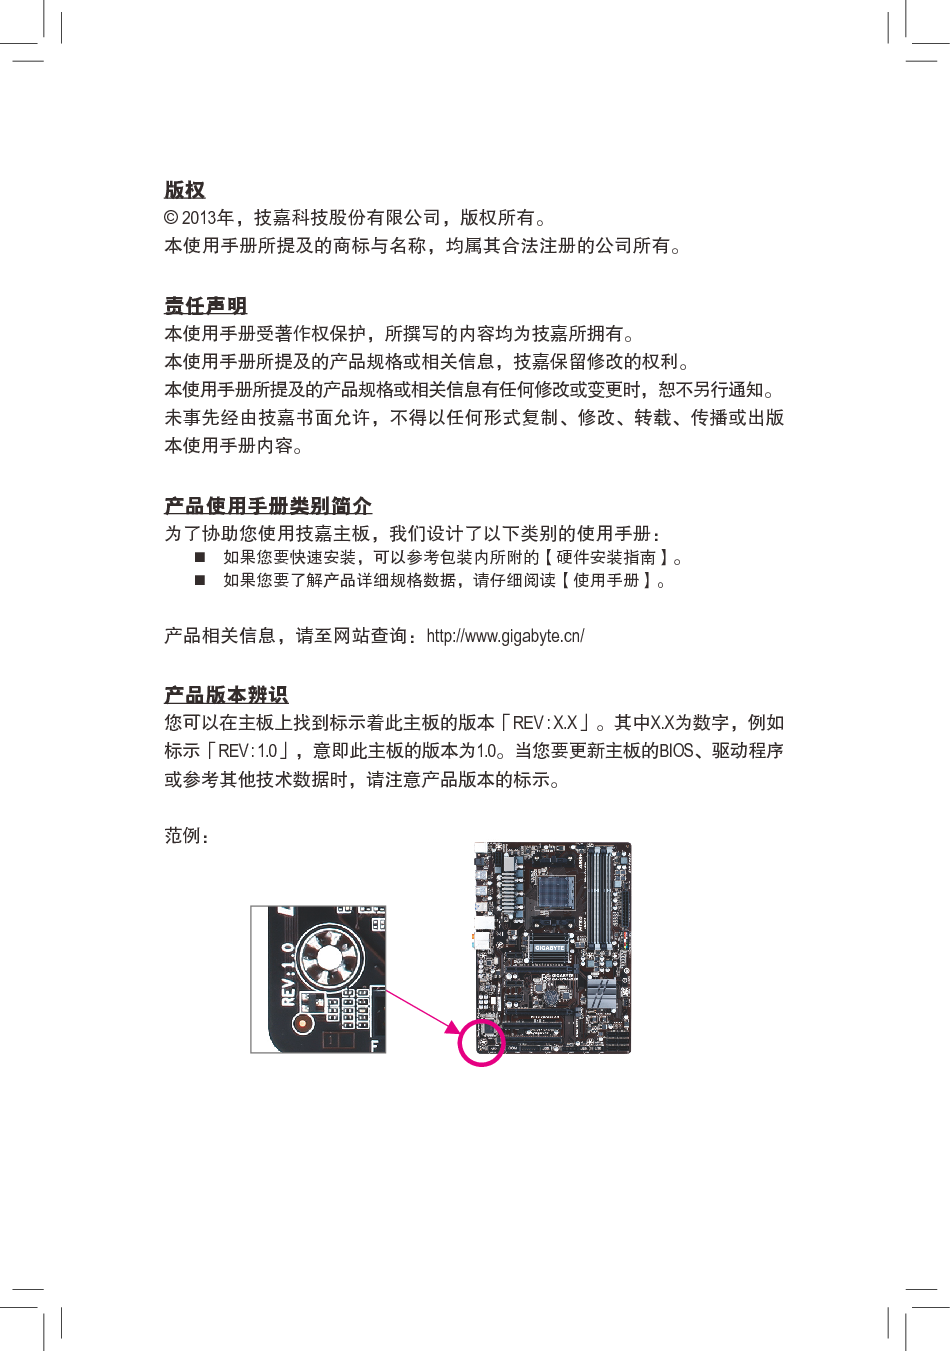 技嘉 Gigabyte GA-970A-UD3P 1001版 使用手册 第2页